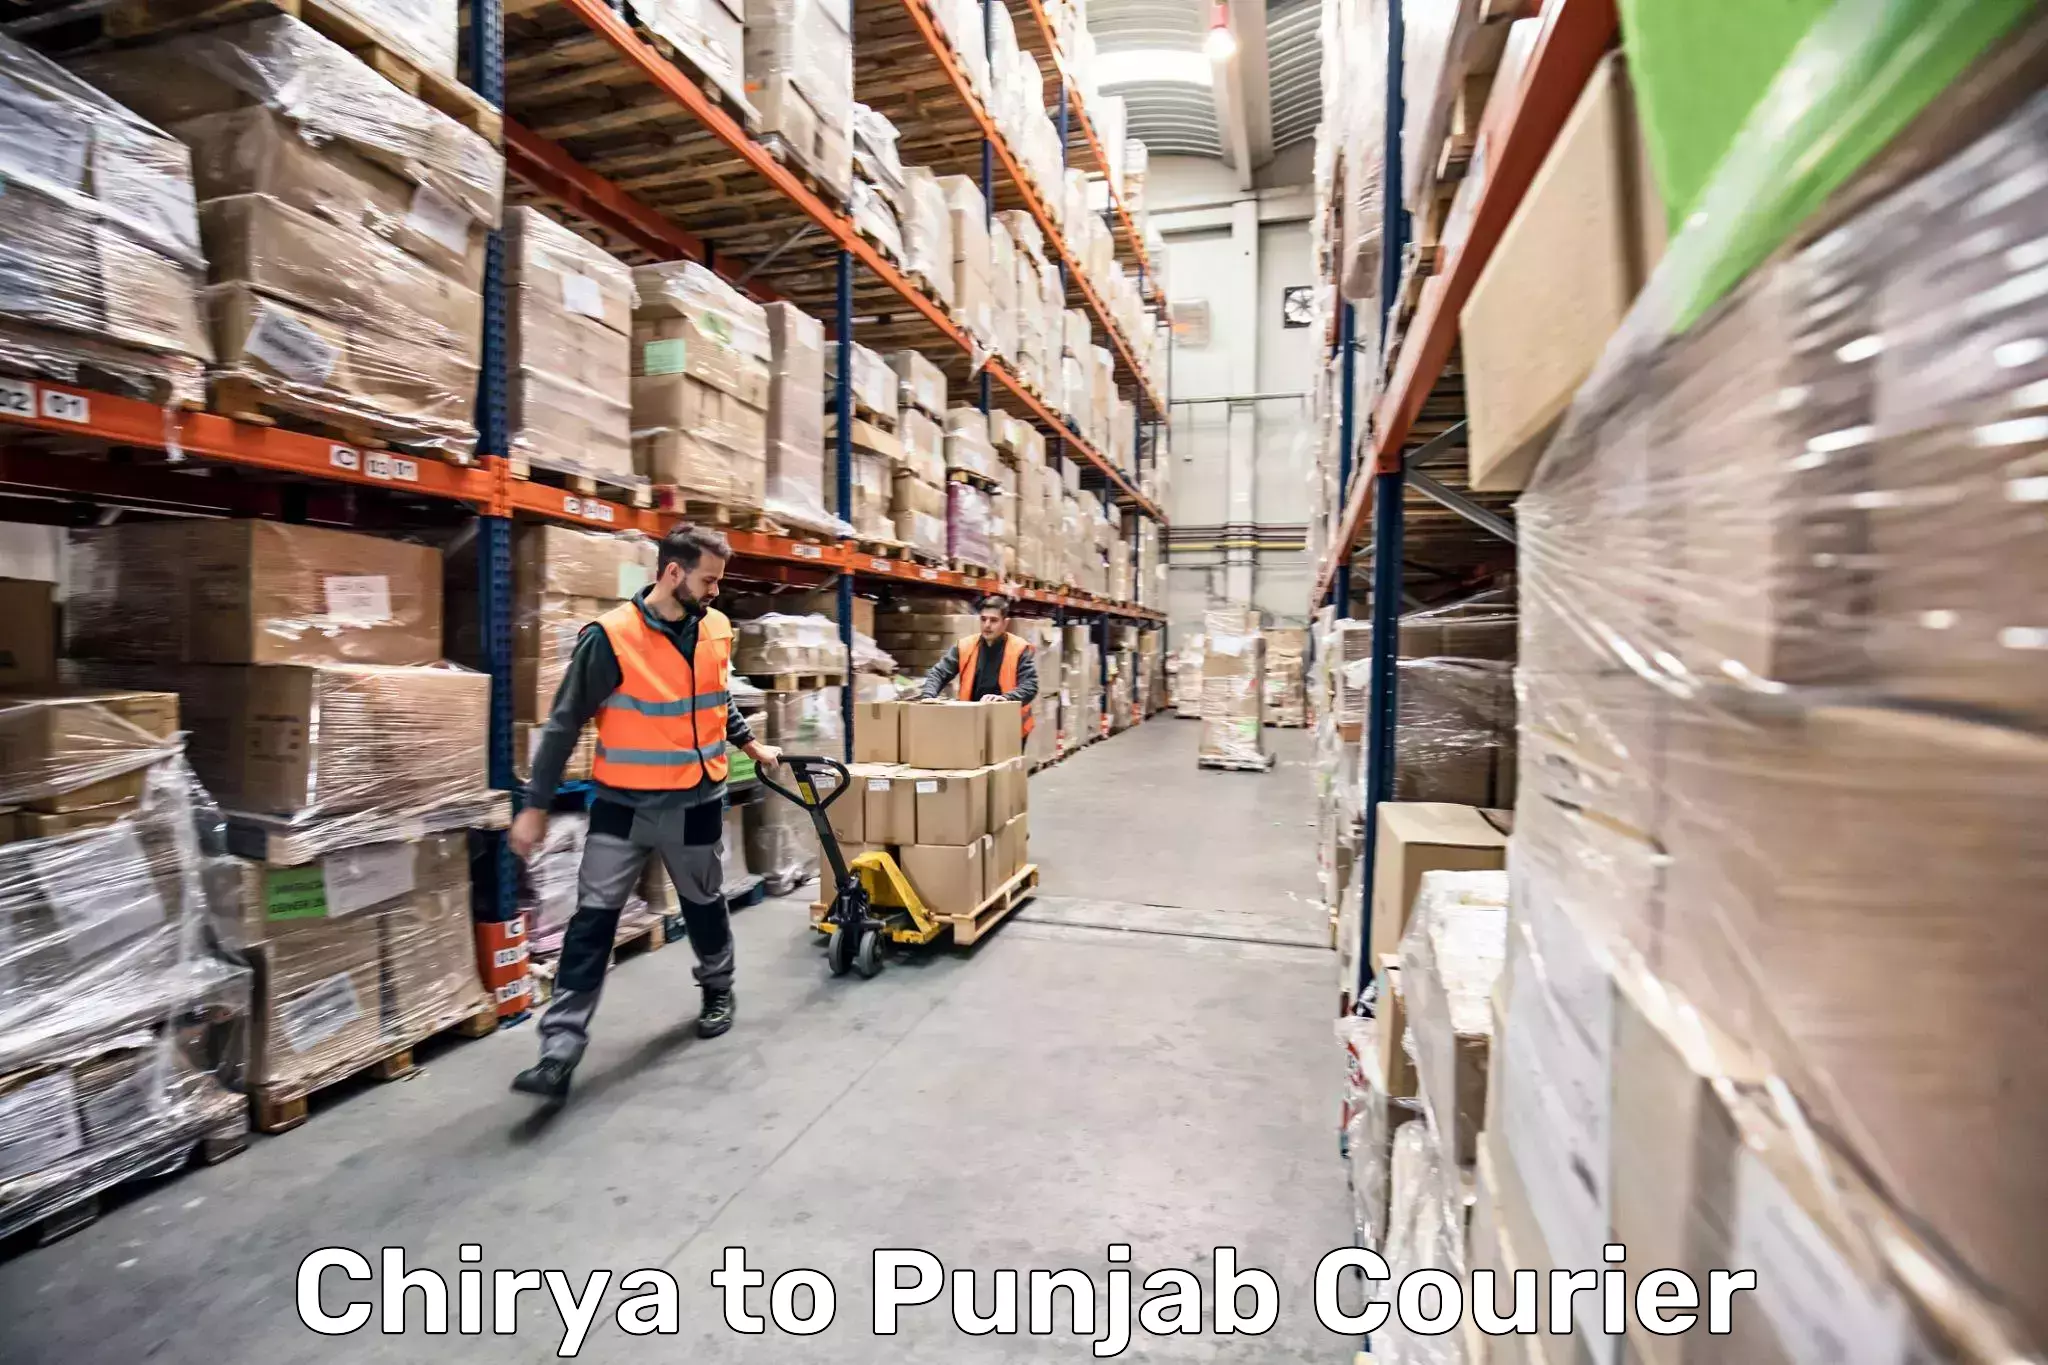 Luggage transport consultancy Chirya to Punjab